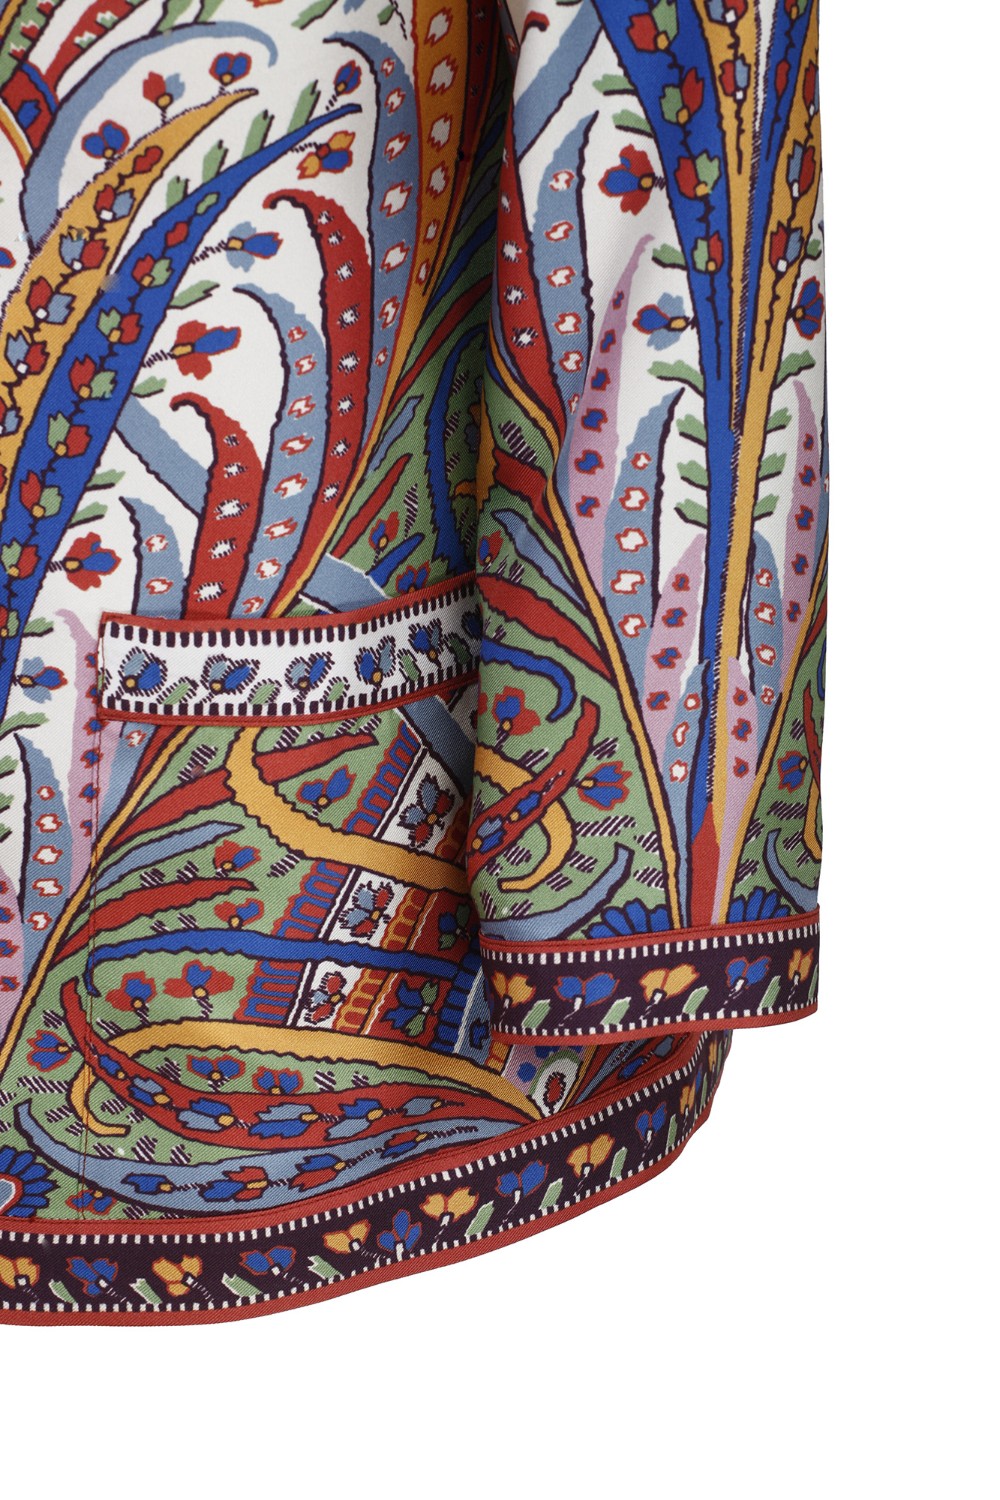 shop ETRO  Giacca: Etro giacca realizzata in twill di seta con motivo Paisley floreale piazzato.
Composizione: 100% seta.
Maniche a kimono.
Made in Italy.. WRCA0018 AK019-X0800 number 1907047